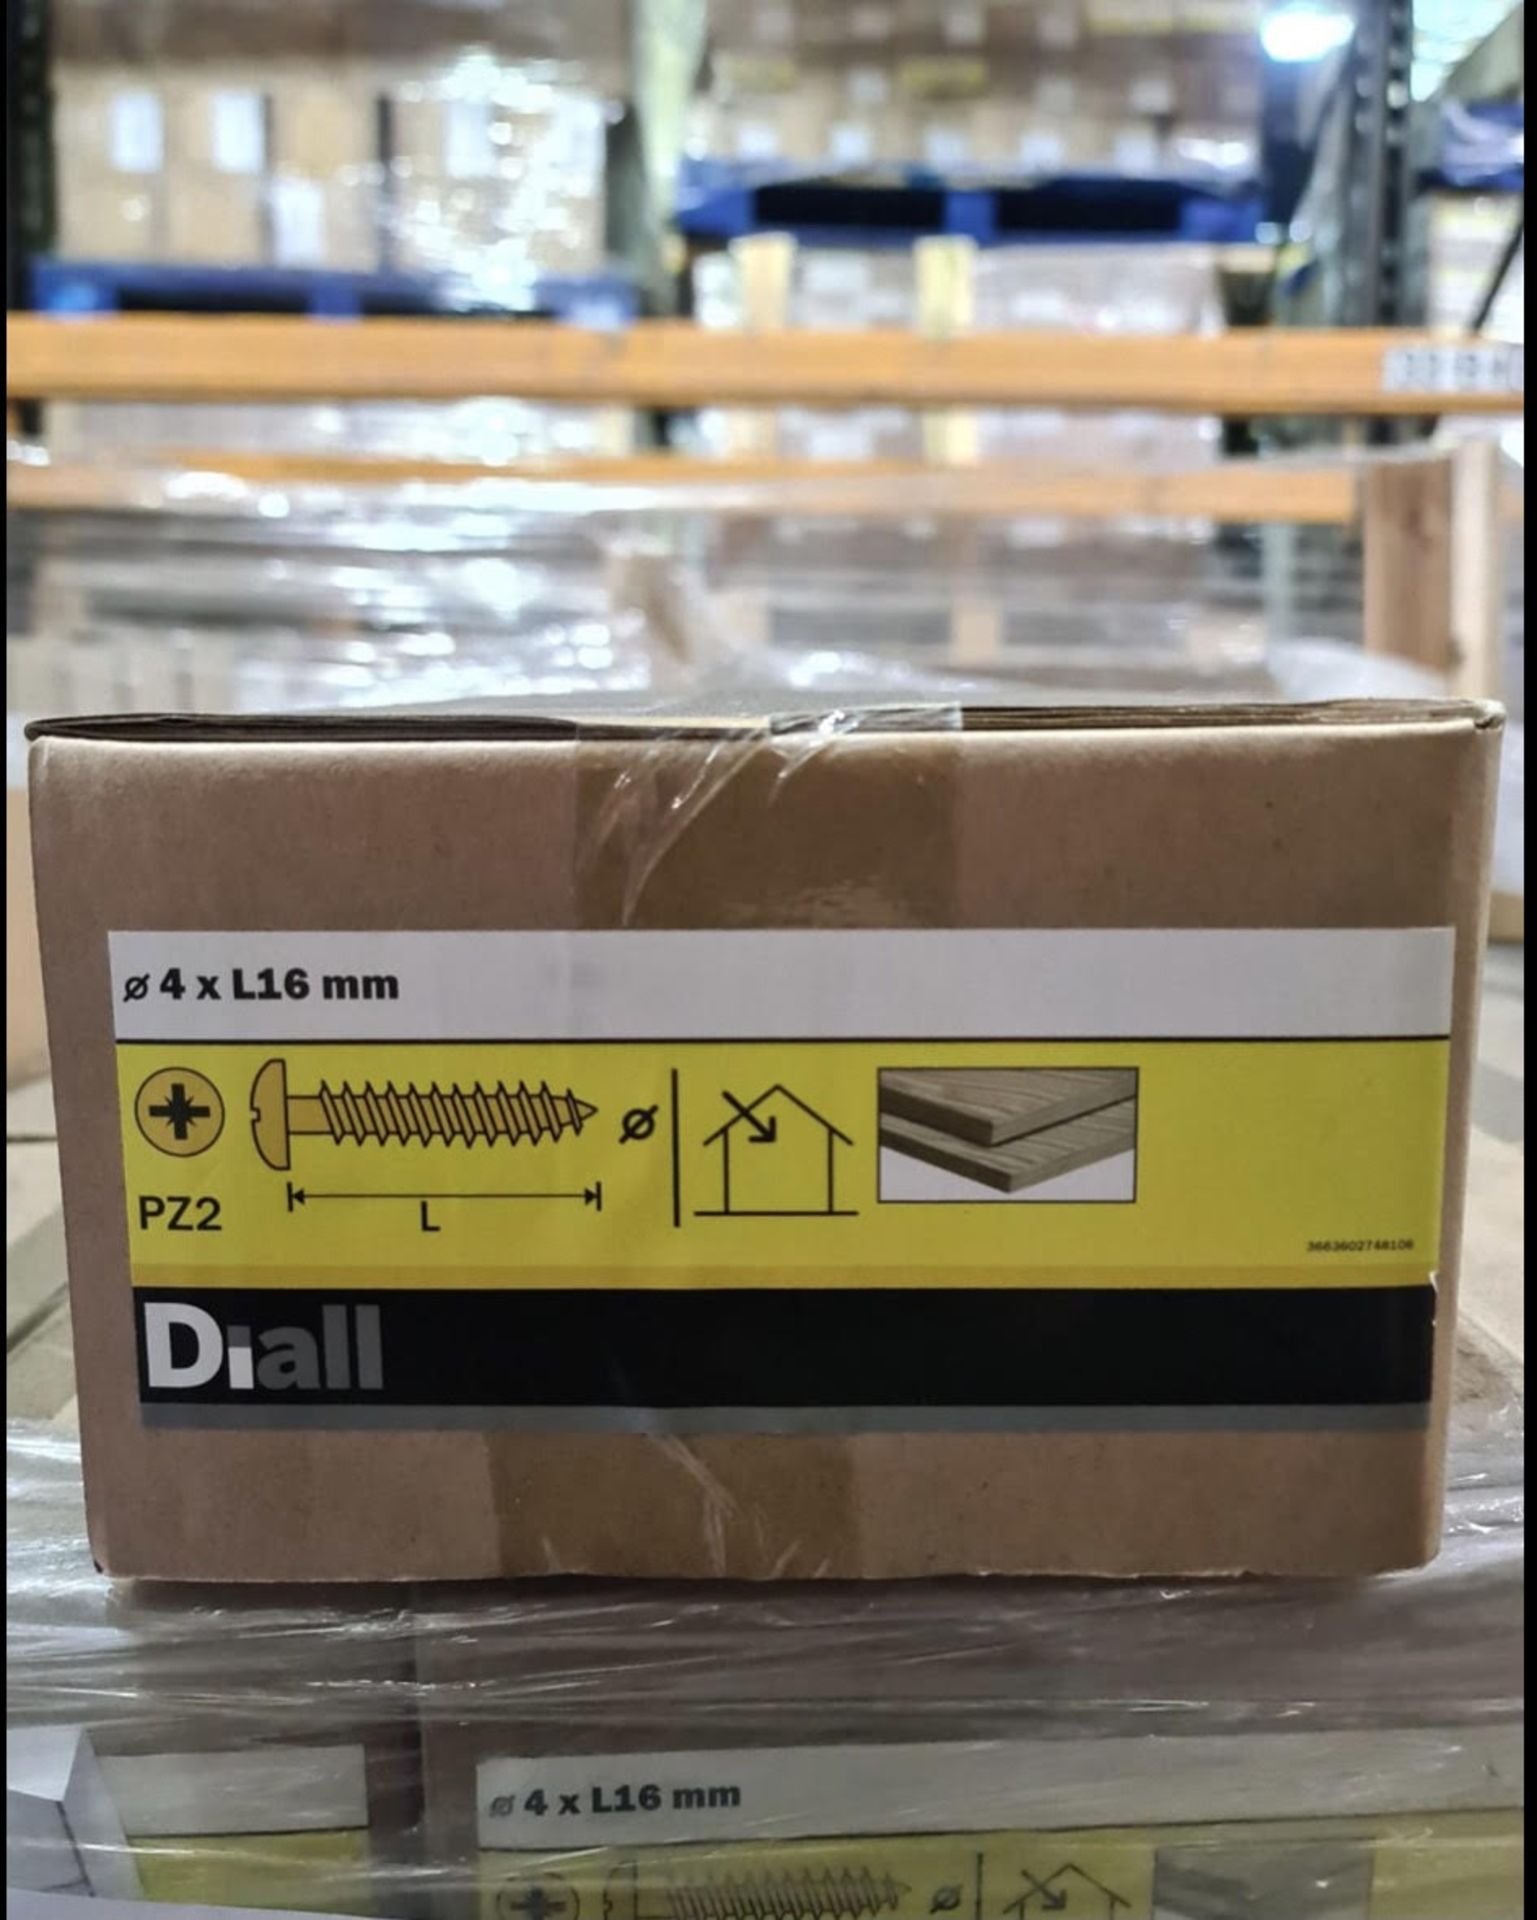 Brand new 4kg box of diall 4 x l16mm pz2 wood screws rrp £23.75